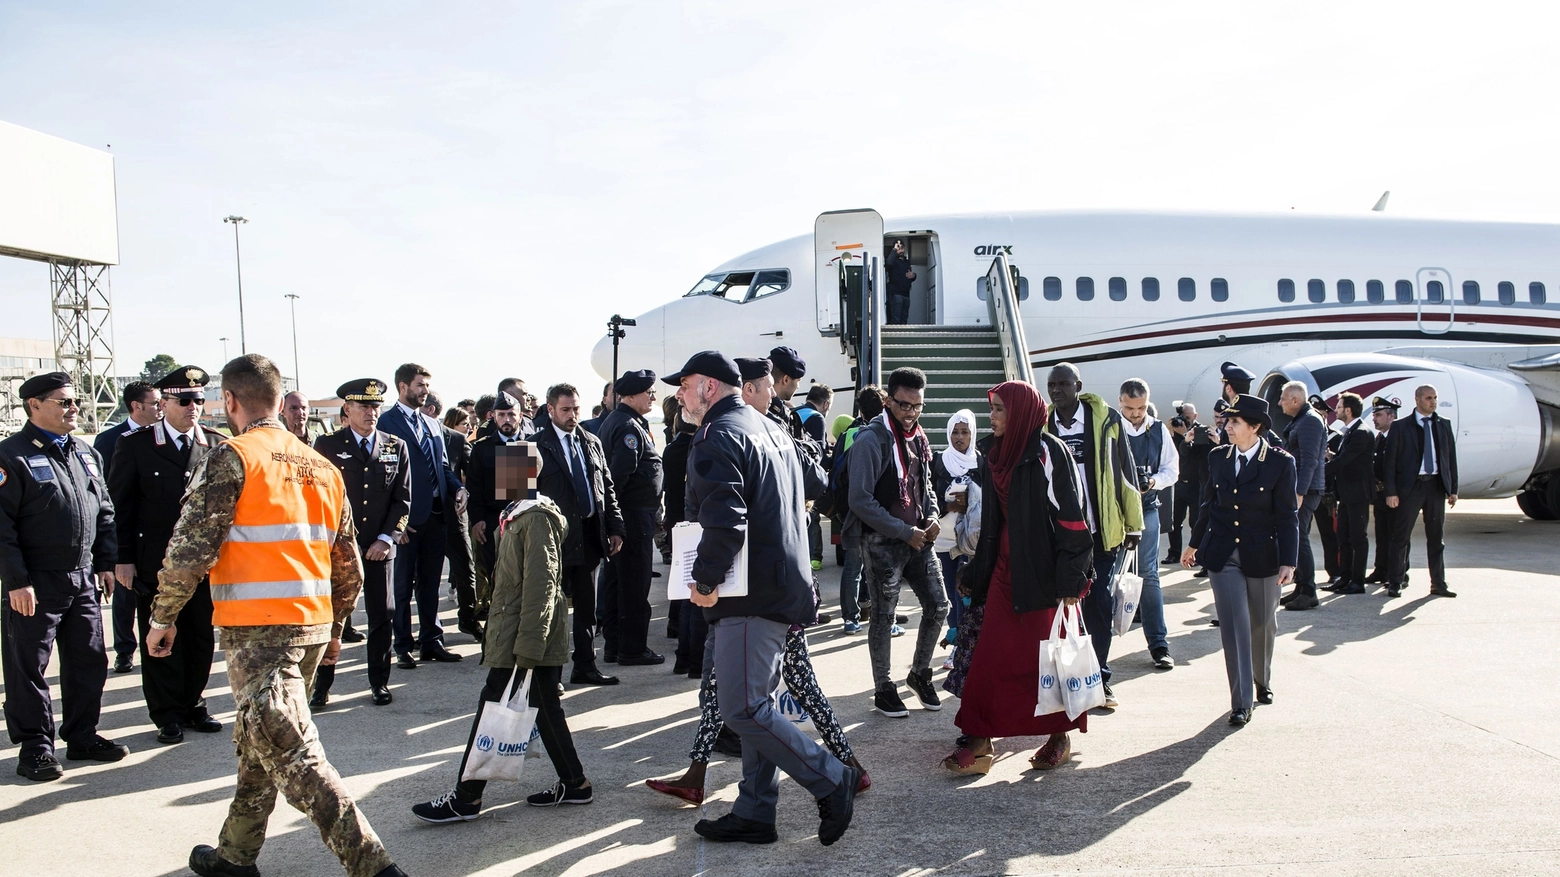 L'arrivo dei profughi a Pratica di Mare 